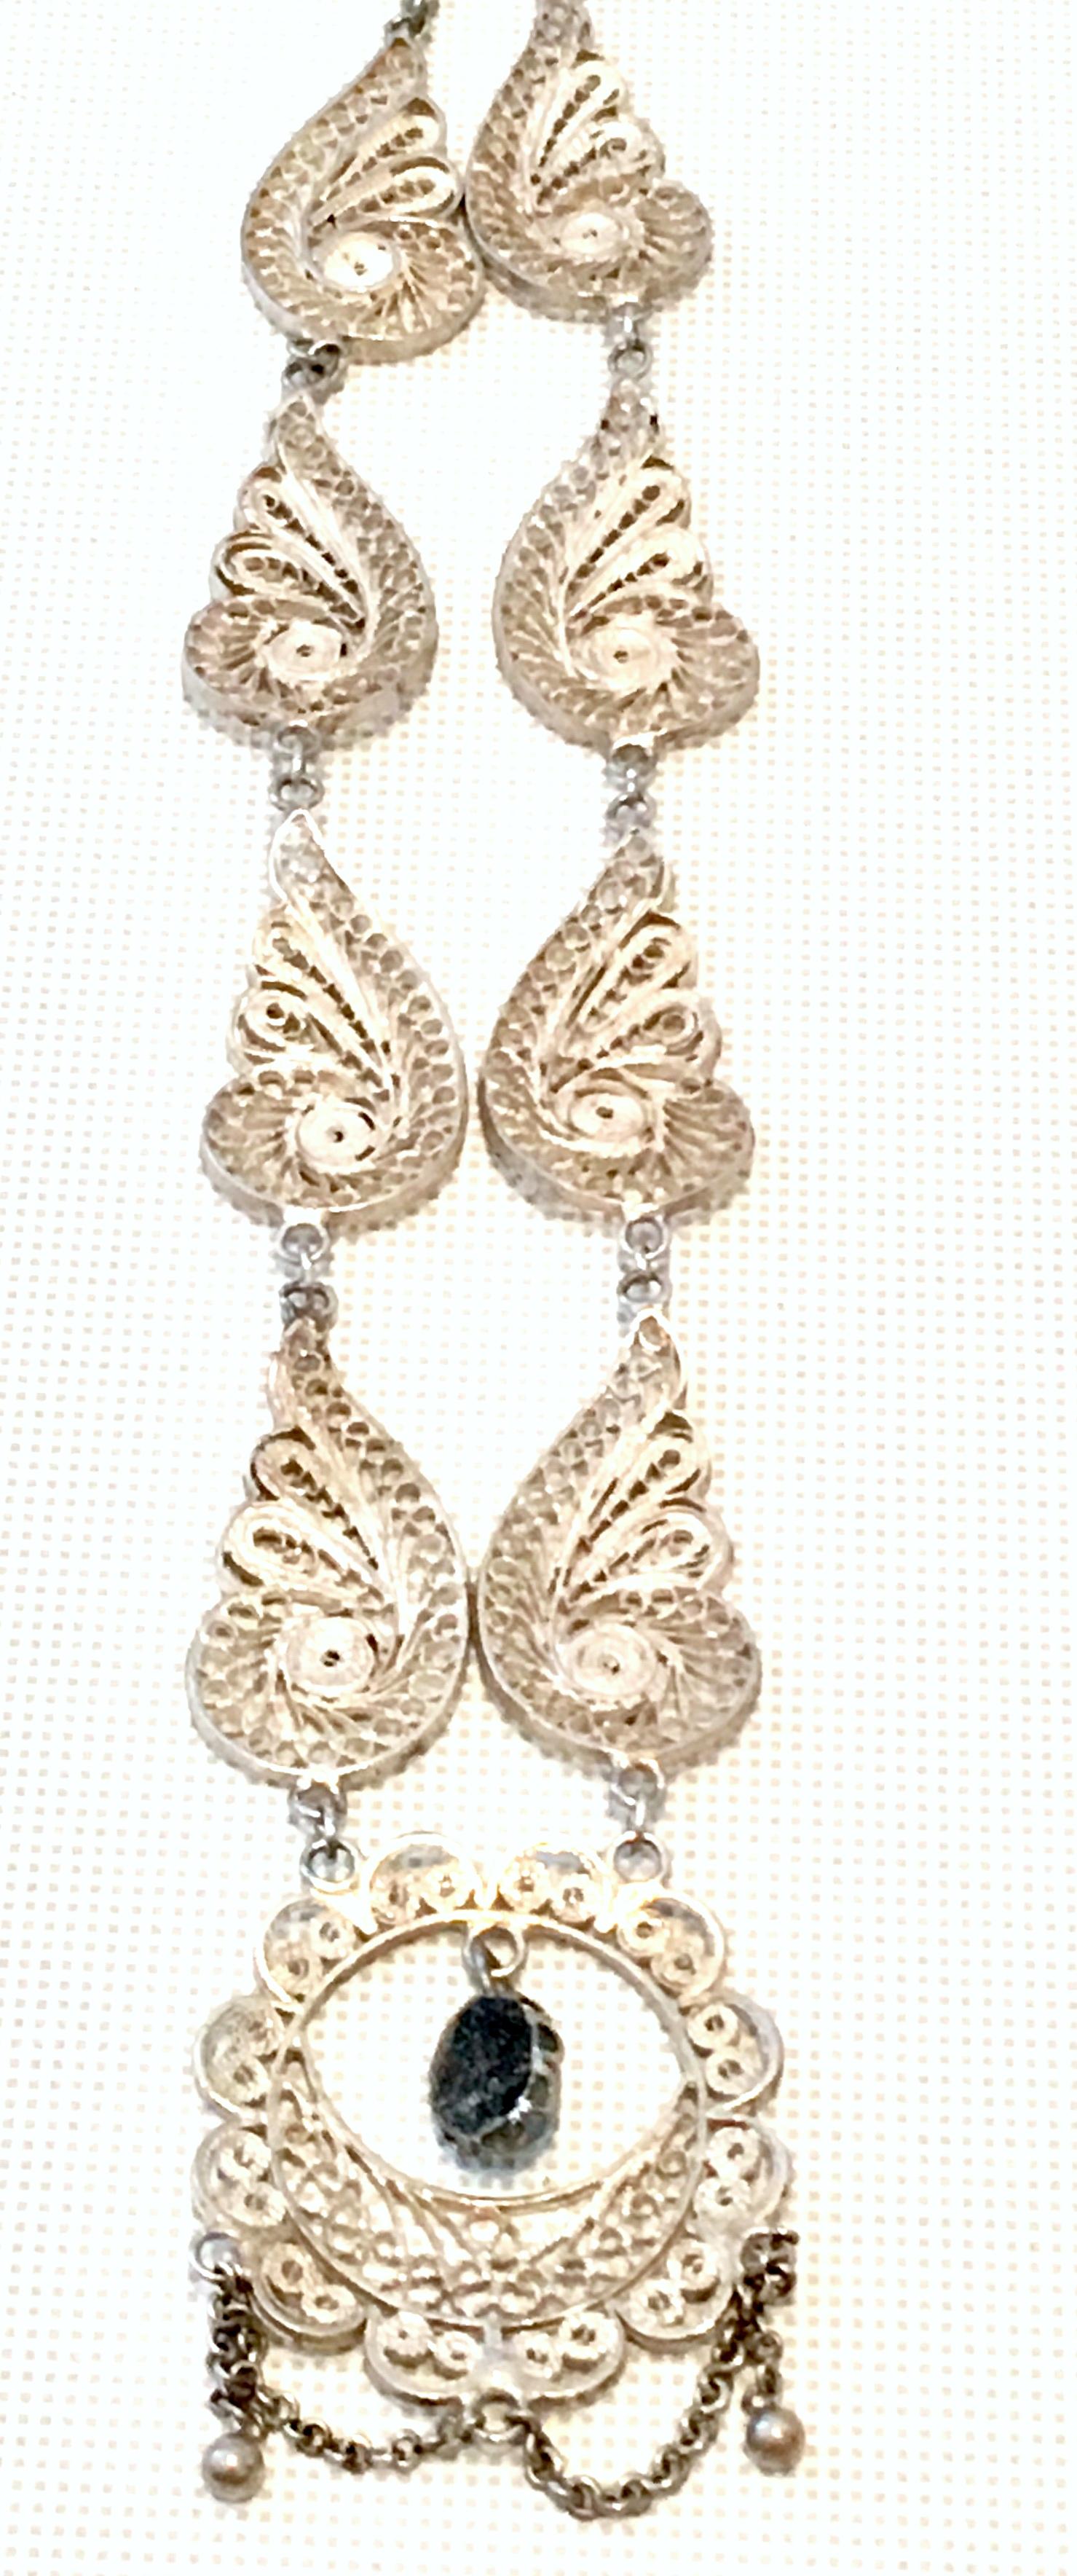 Antique Art Nouveau Sterling Silver & Moonstone Pendant Necklace For Sale 3